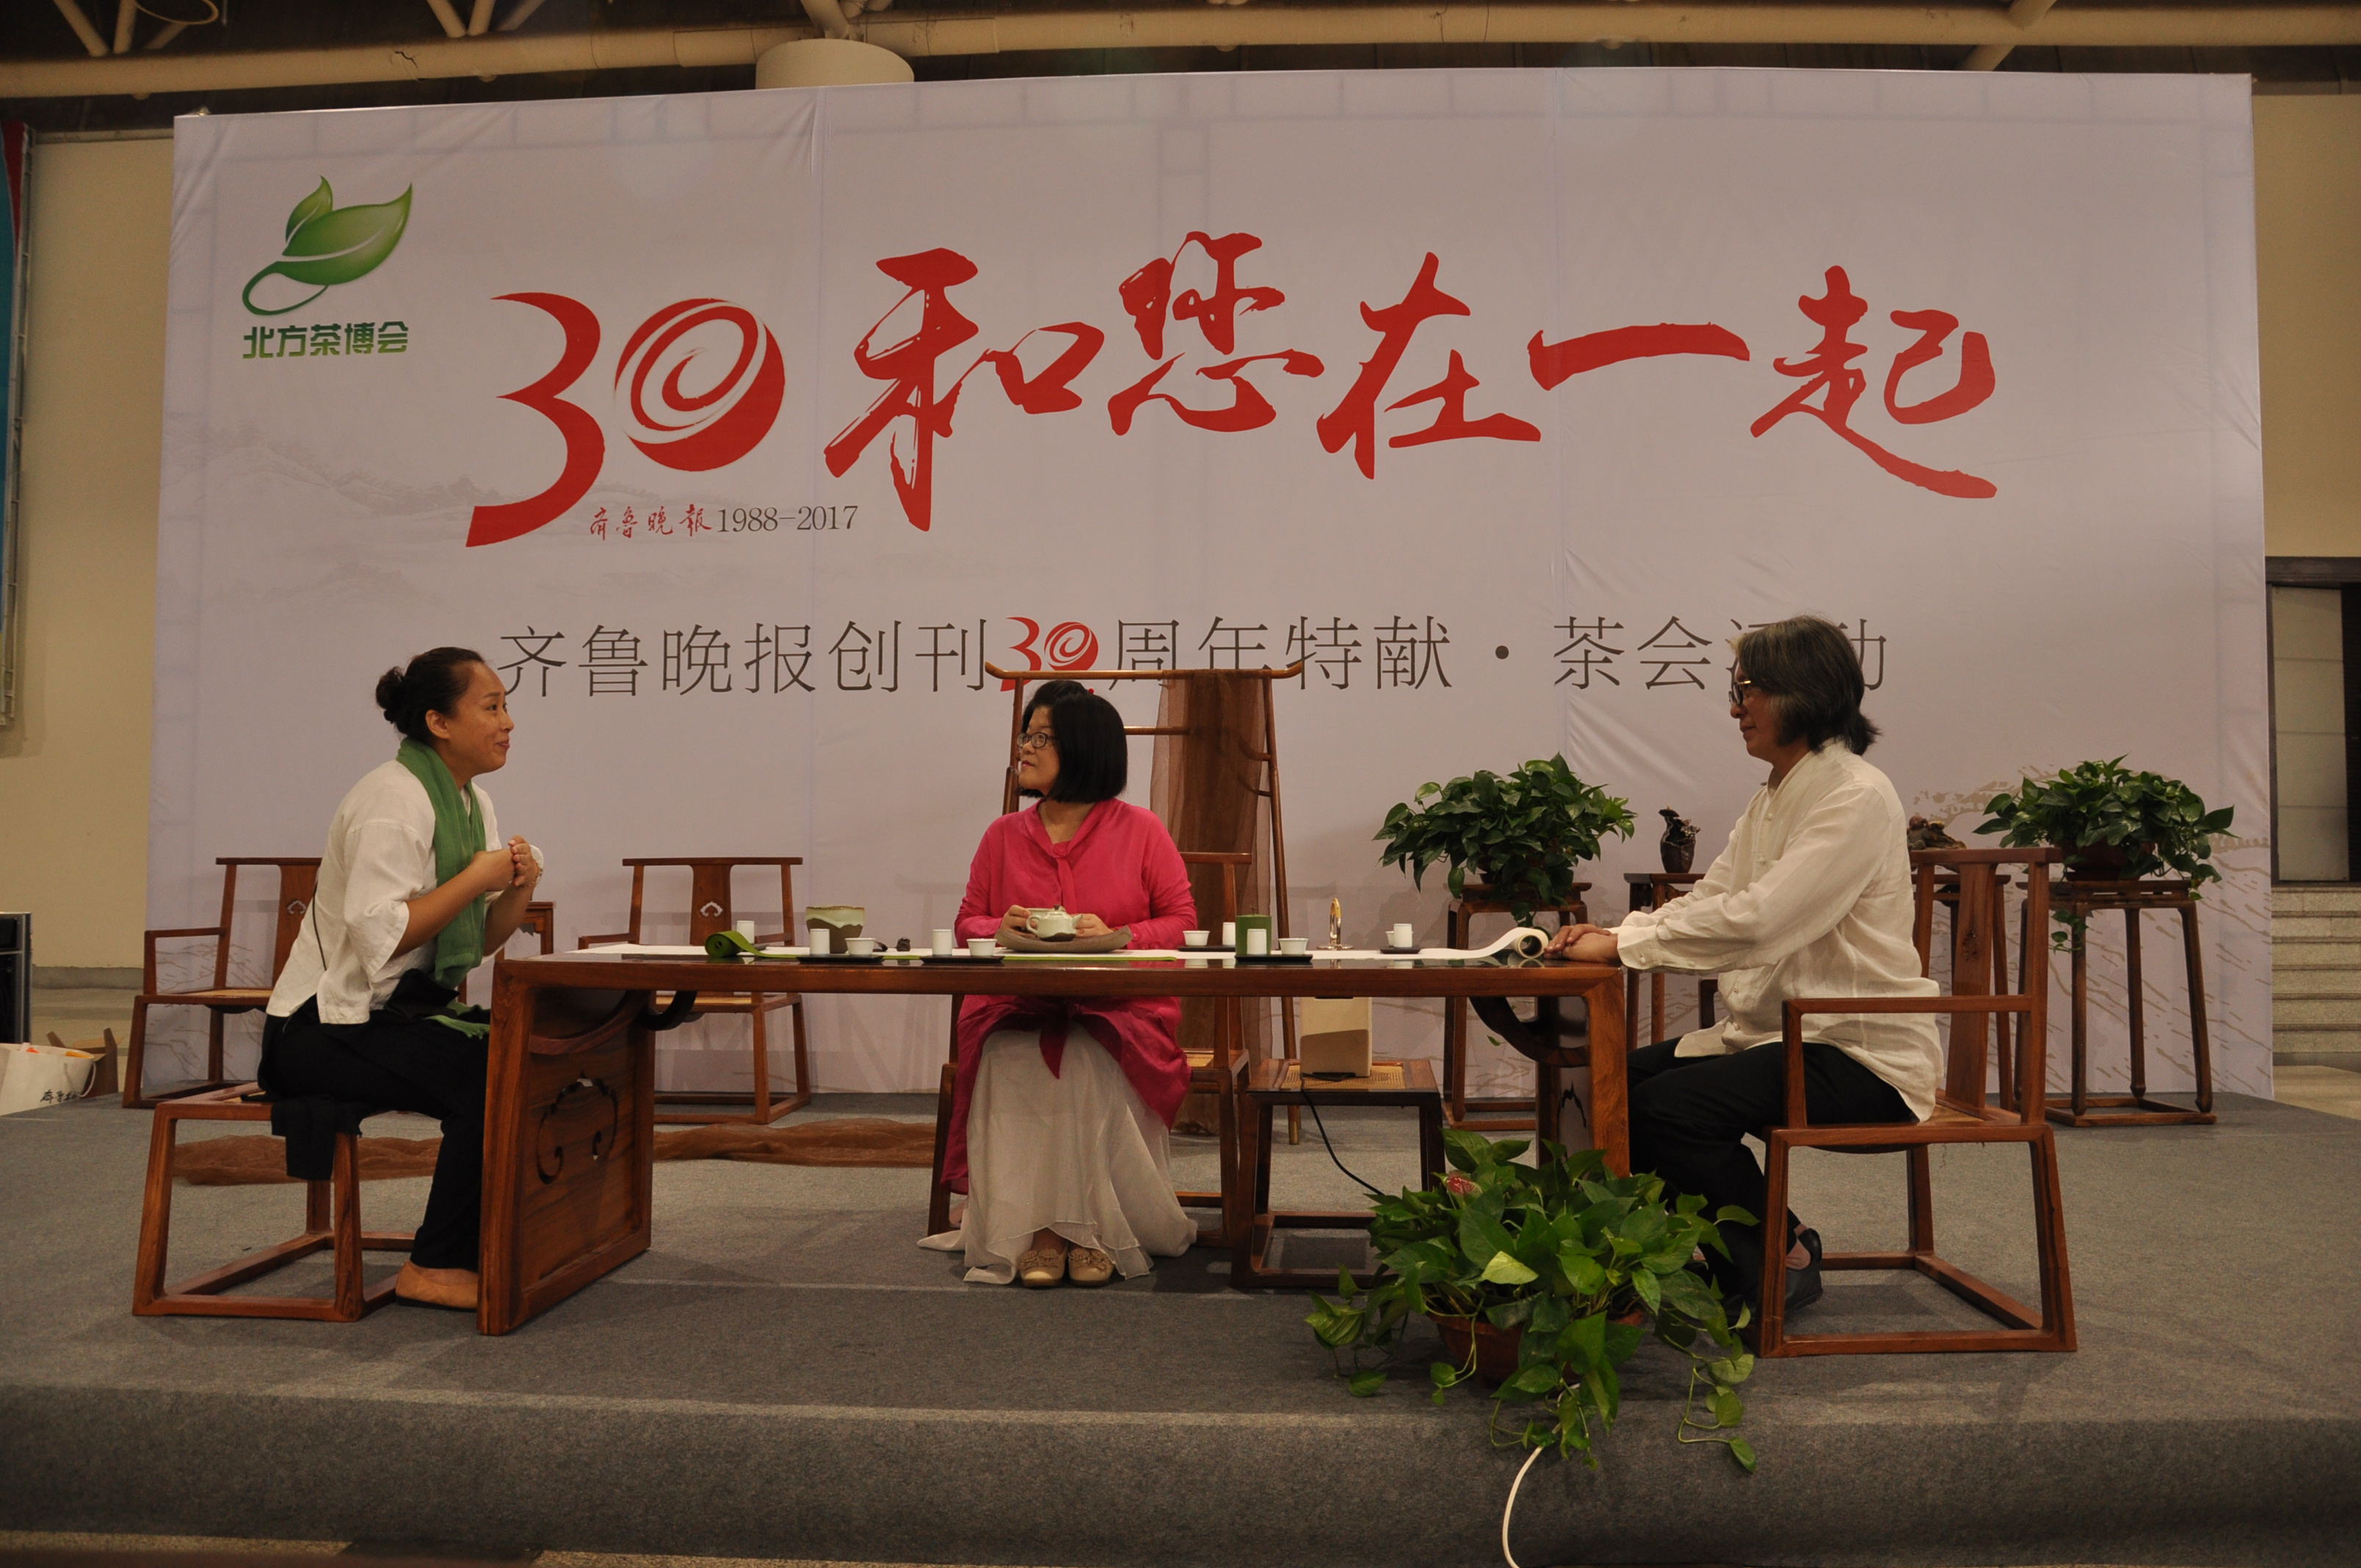 台湾四季茶席将惊艳亮相第十三届中国北方国际茶博会，邀您来赏！